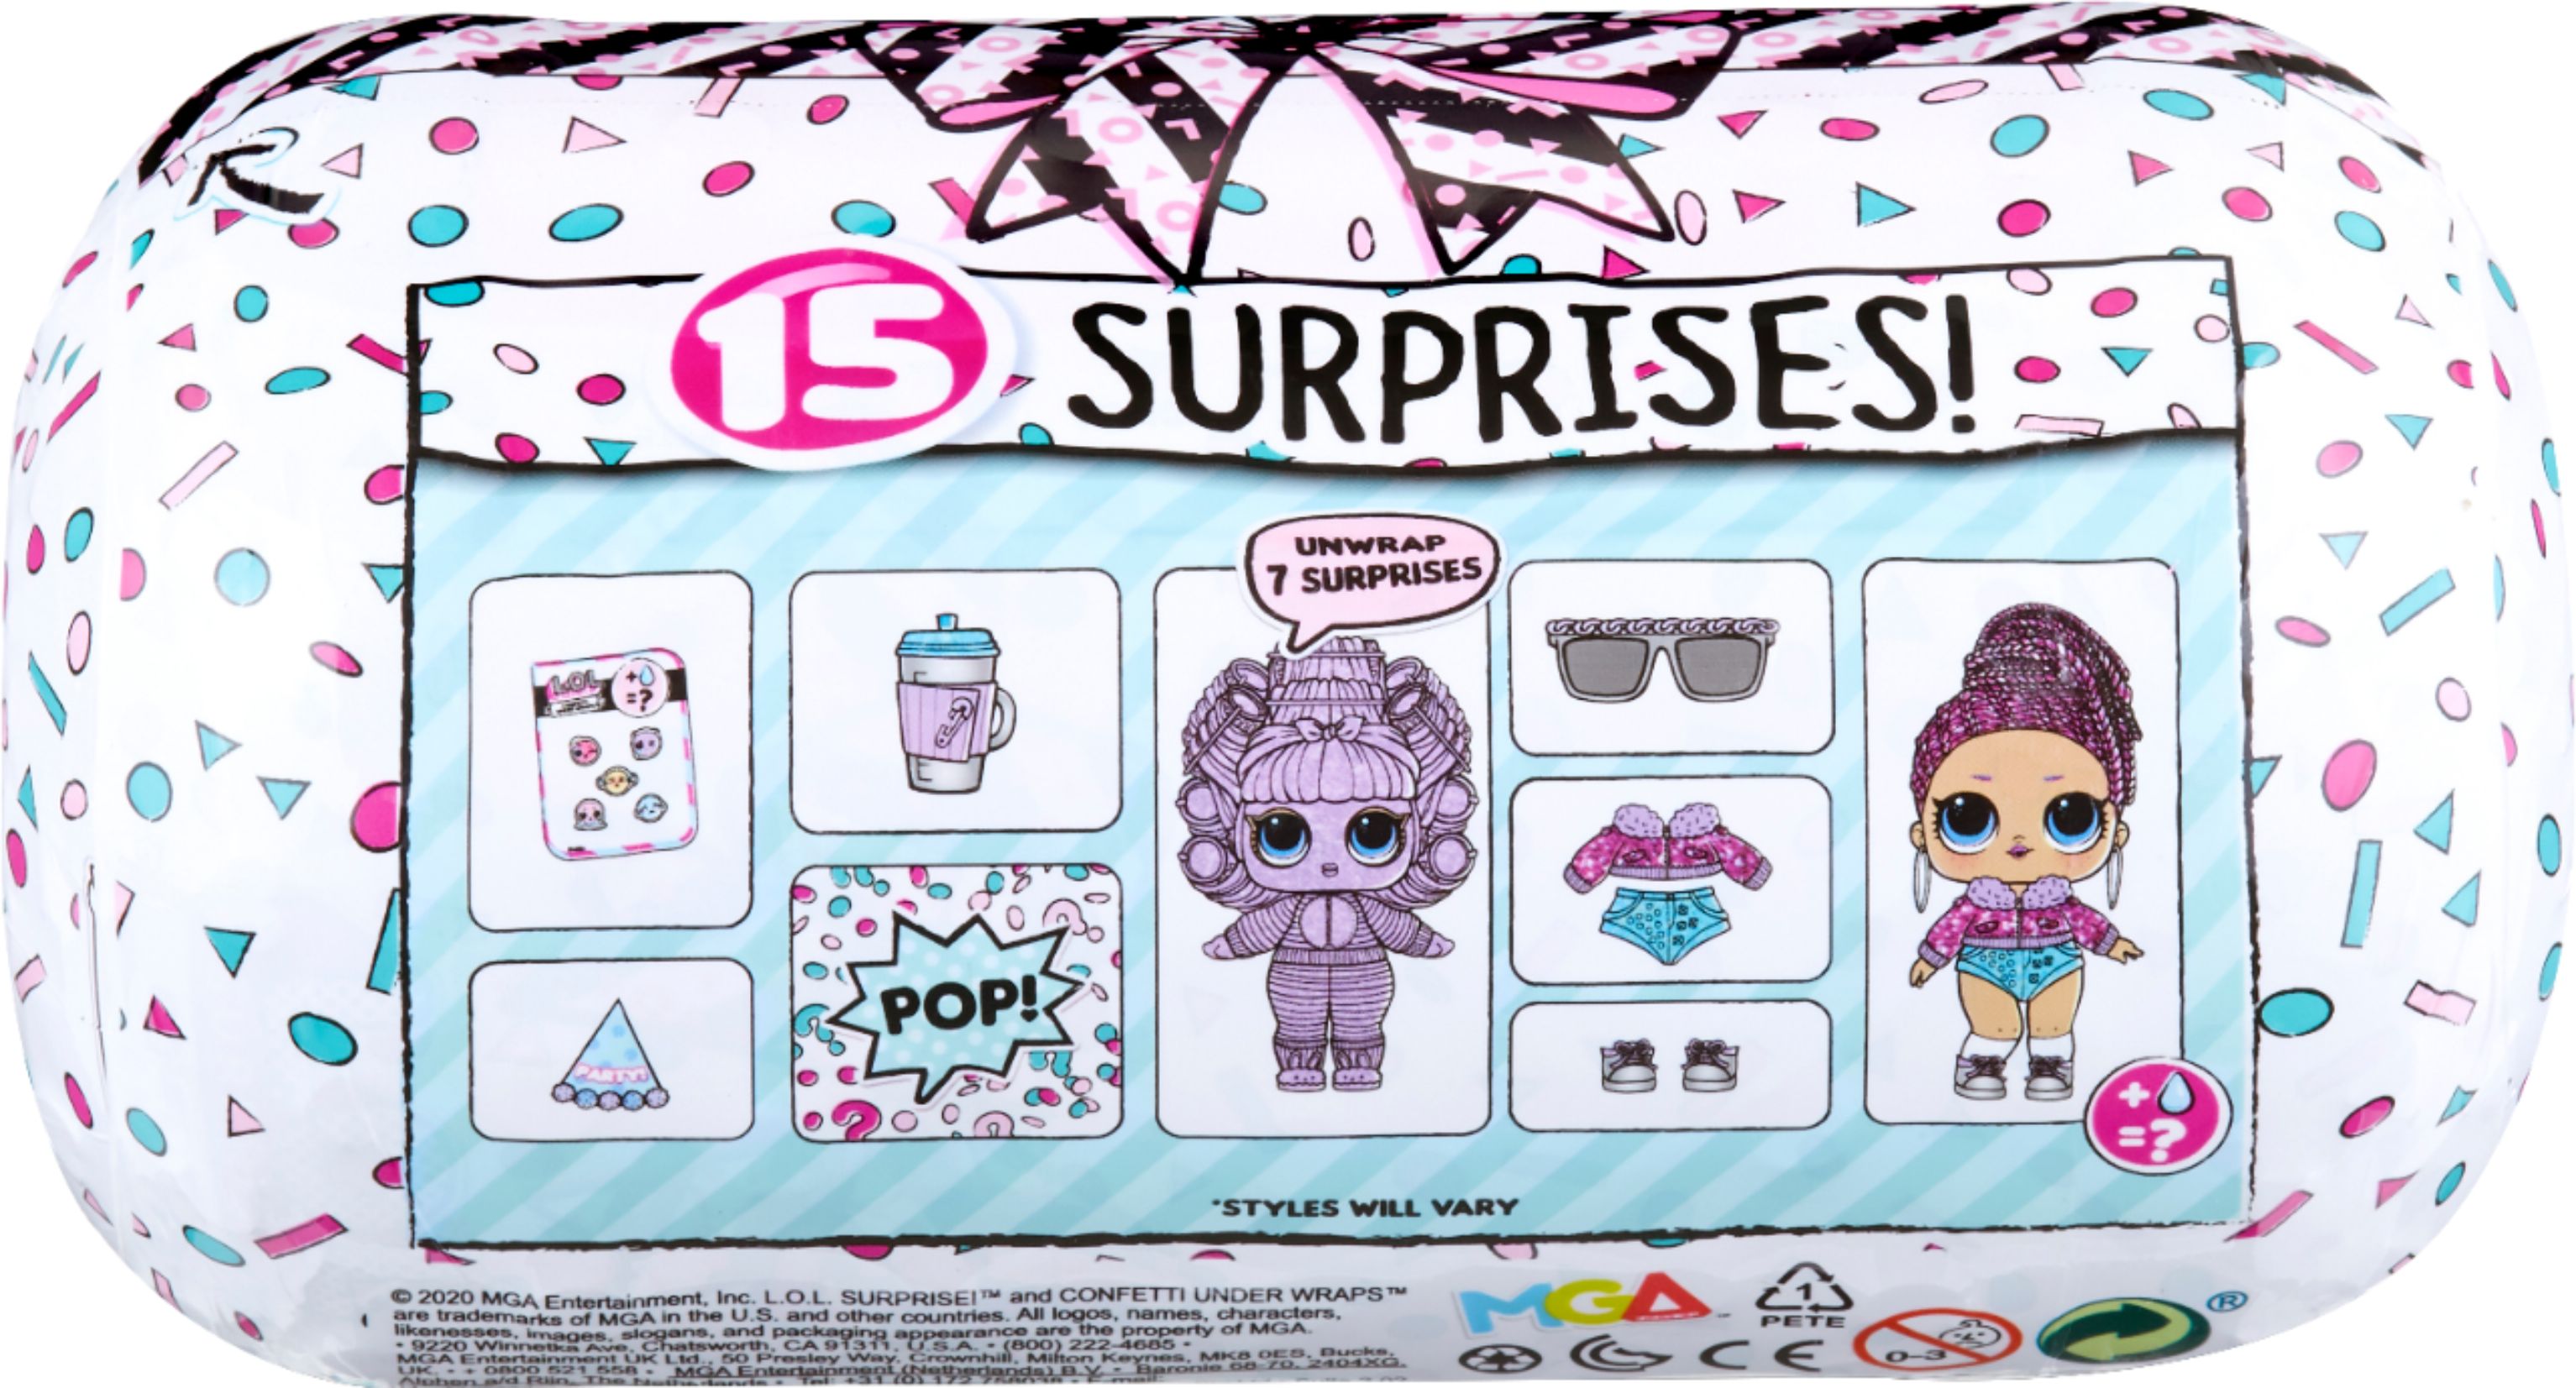 Left View: L.O.L. Surprise! - Confetti Under Wraps with 15 Surprises